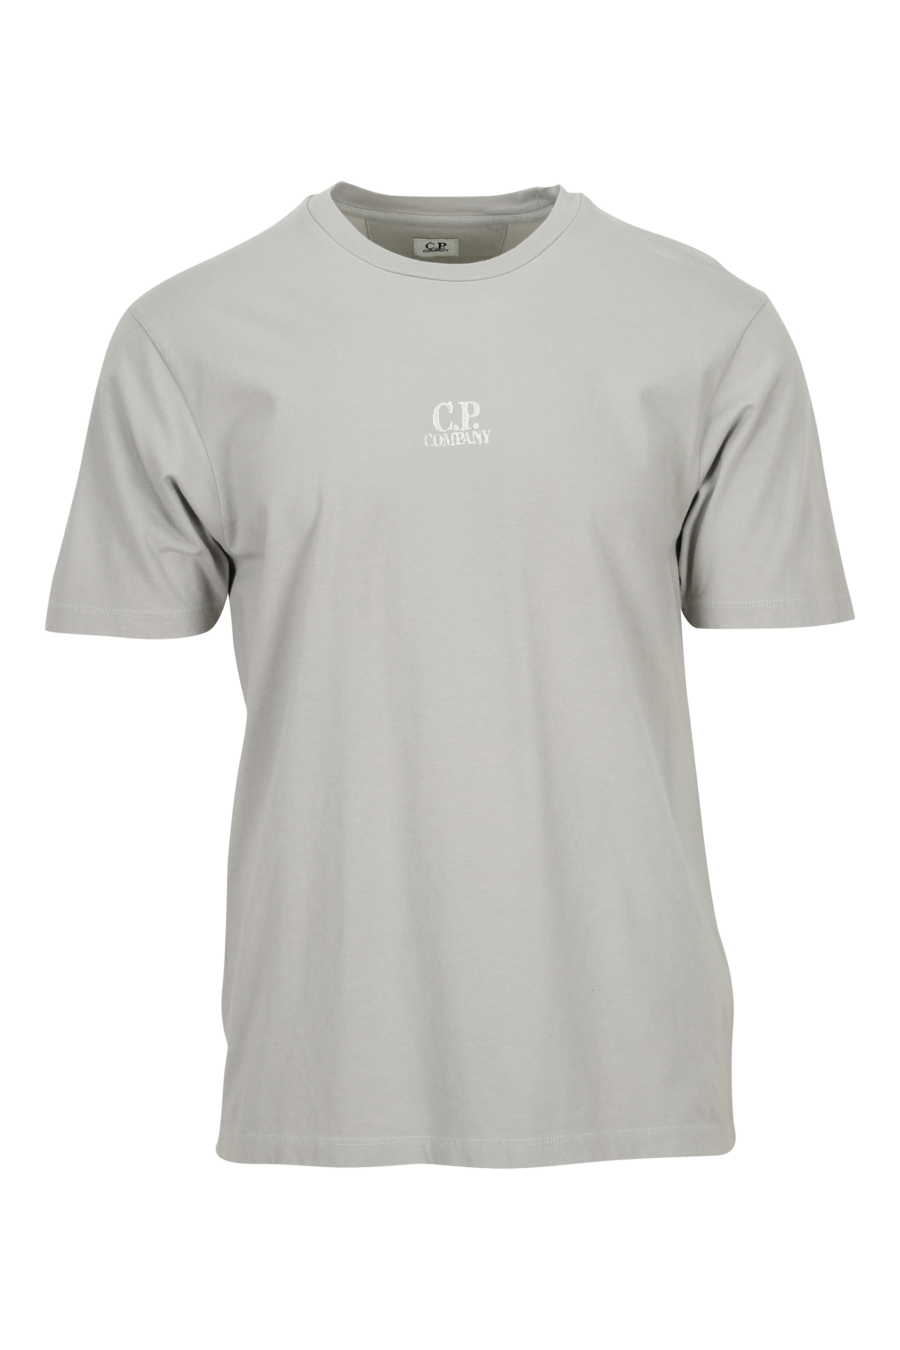 Camiseta gris con minilogo "cp" centrado - 7620943776768